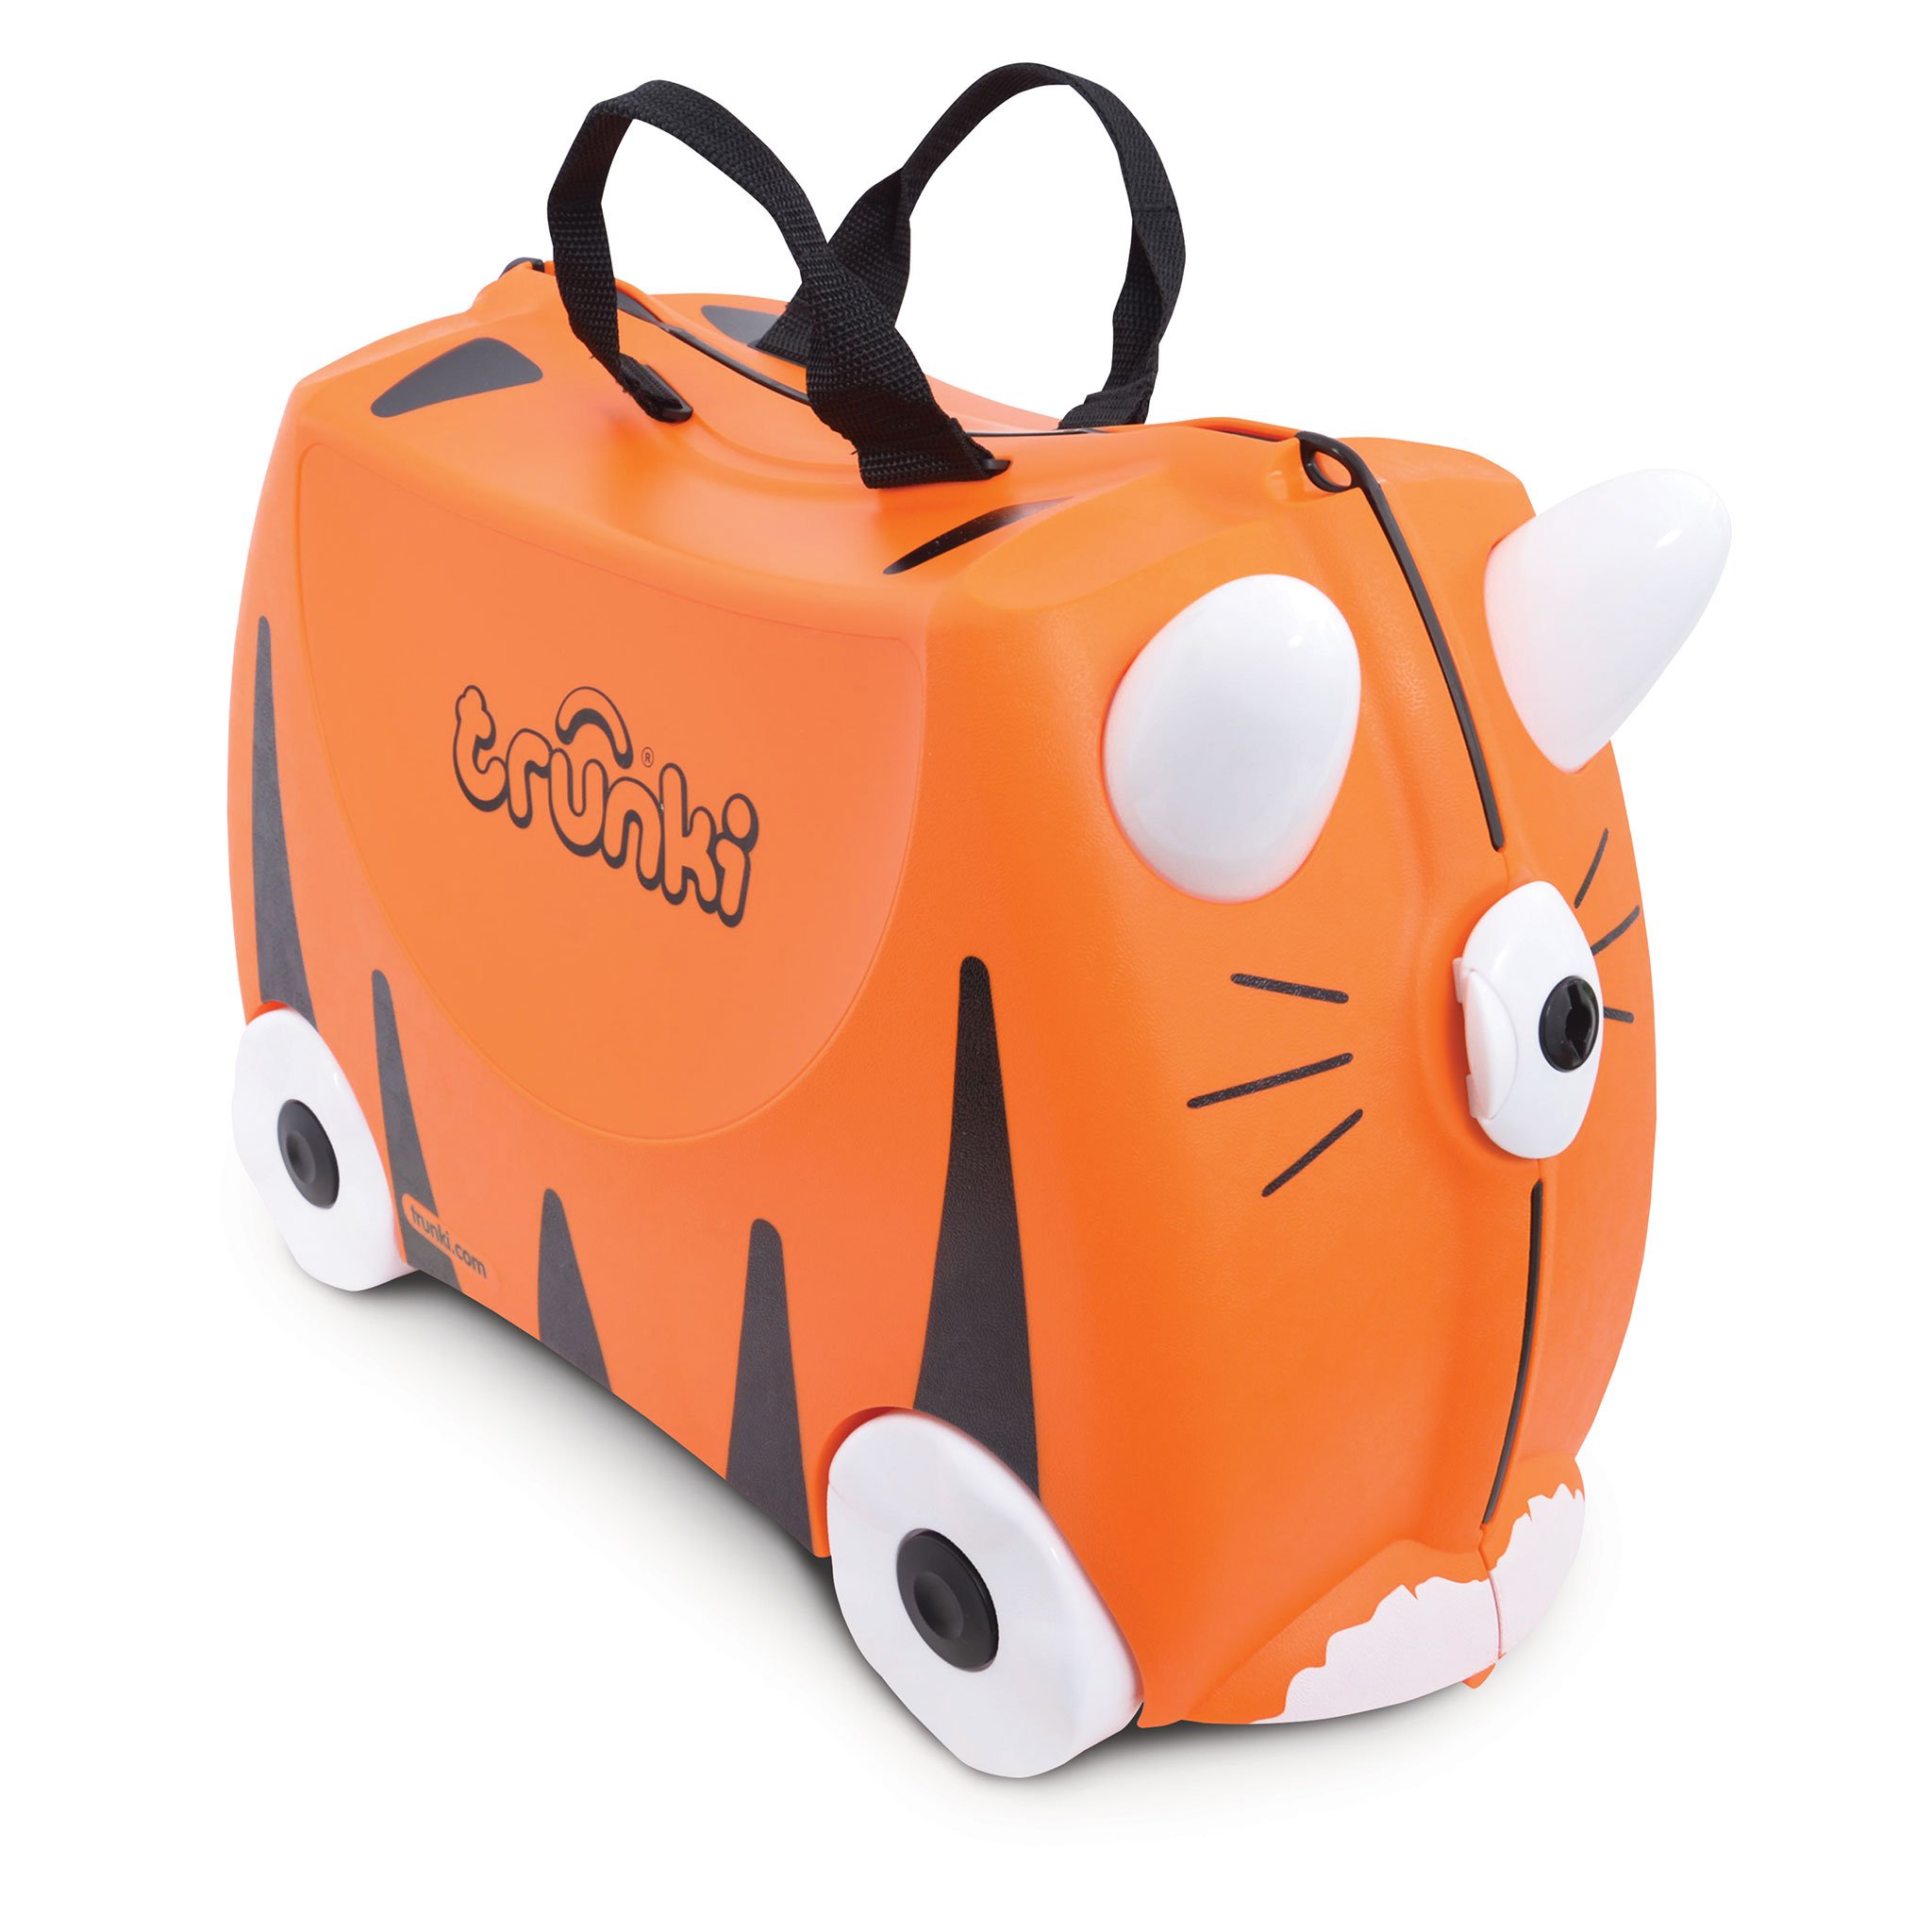 TR0085-GB-trunki-valigetta-cavalcabile-traino-bambini-viaggiare-colorata.jpg